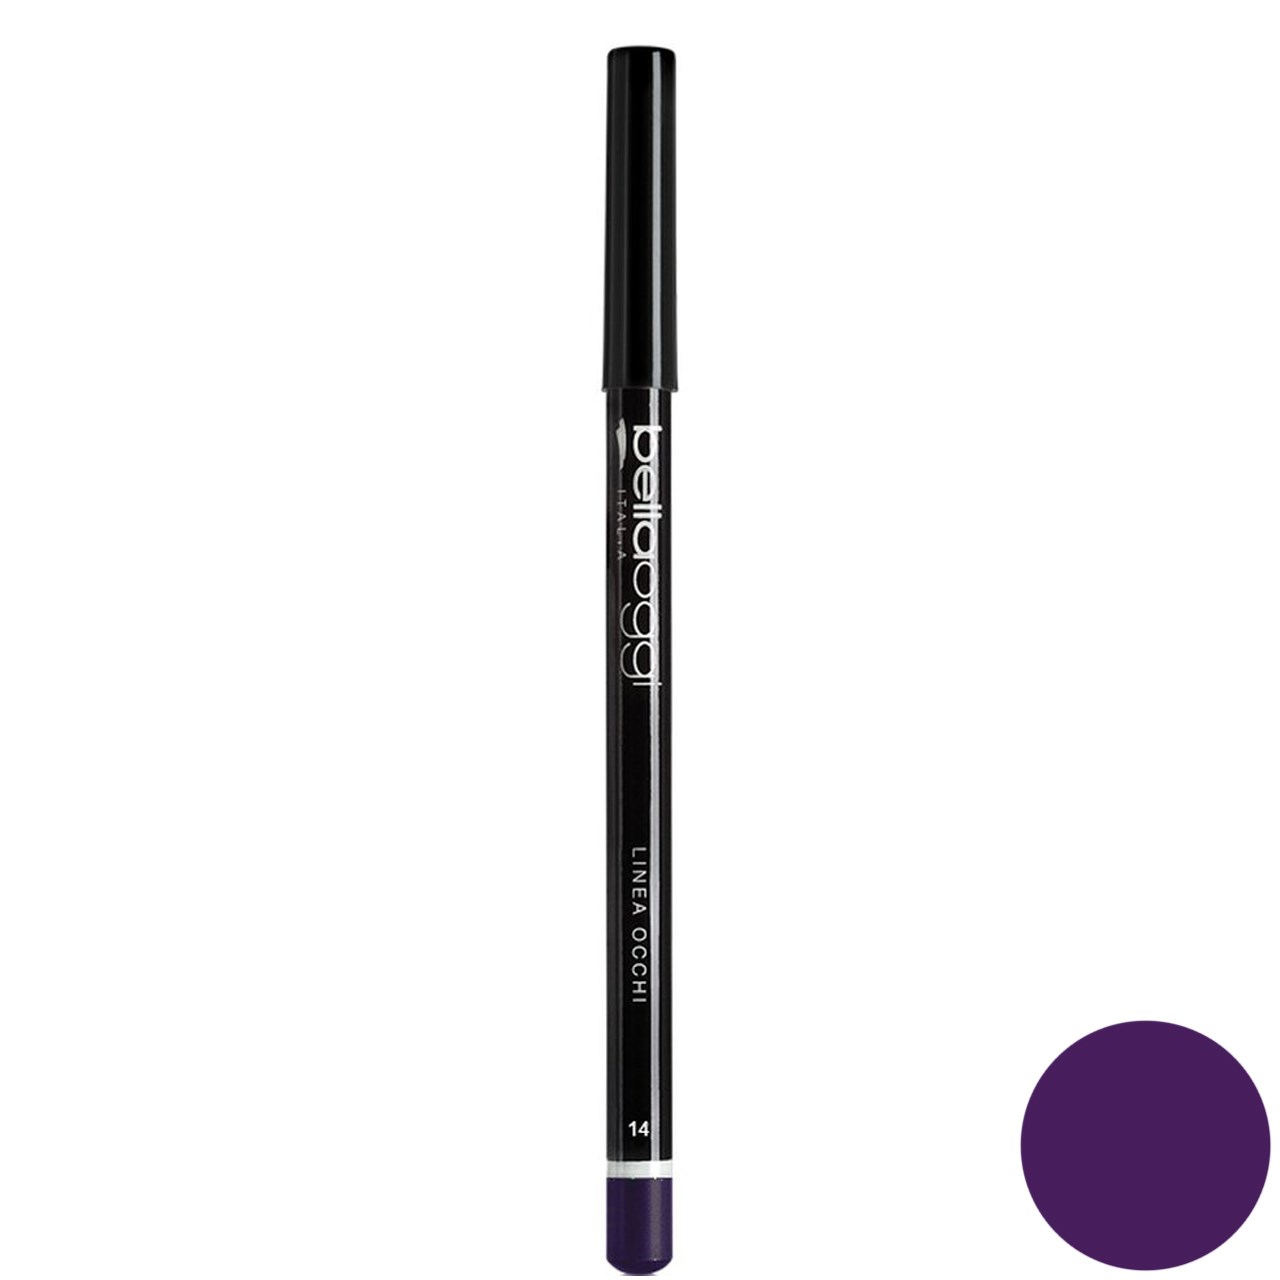 مداد چشم رنگی بلاوجی مدل LINEA OCCHI 014 شماره glossy violet 014